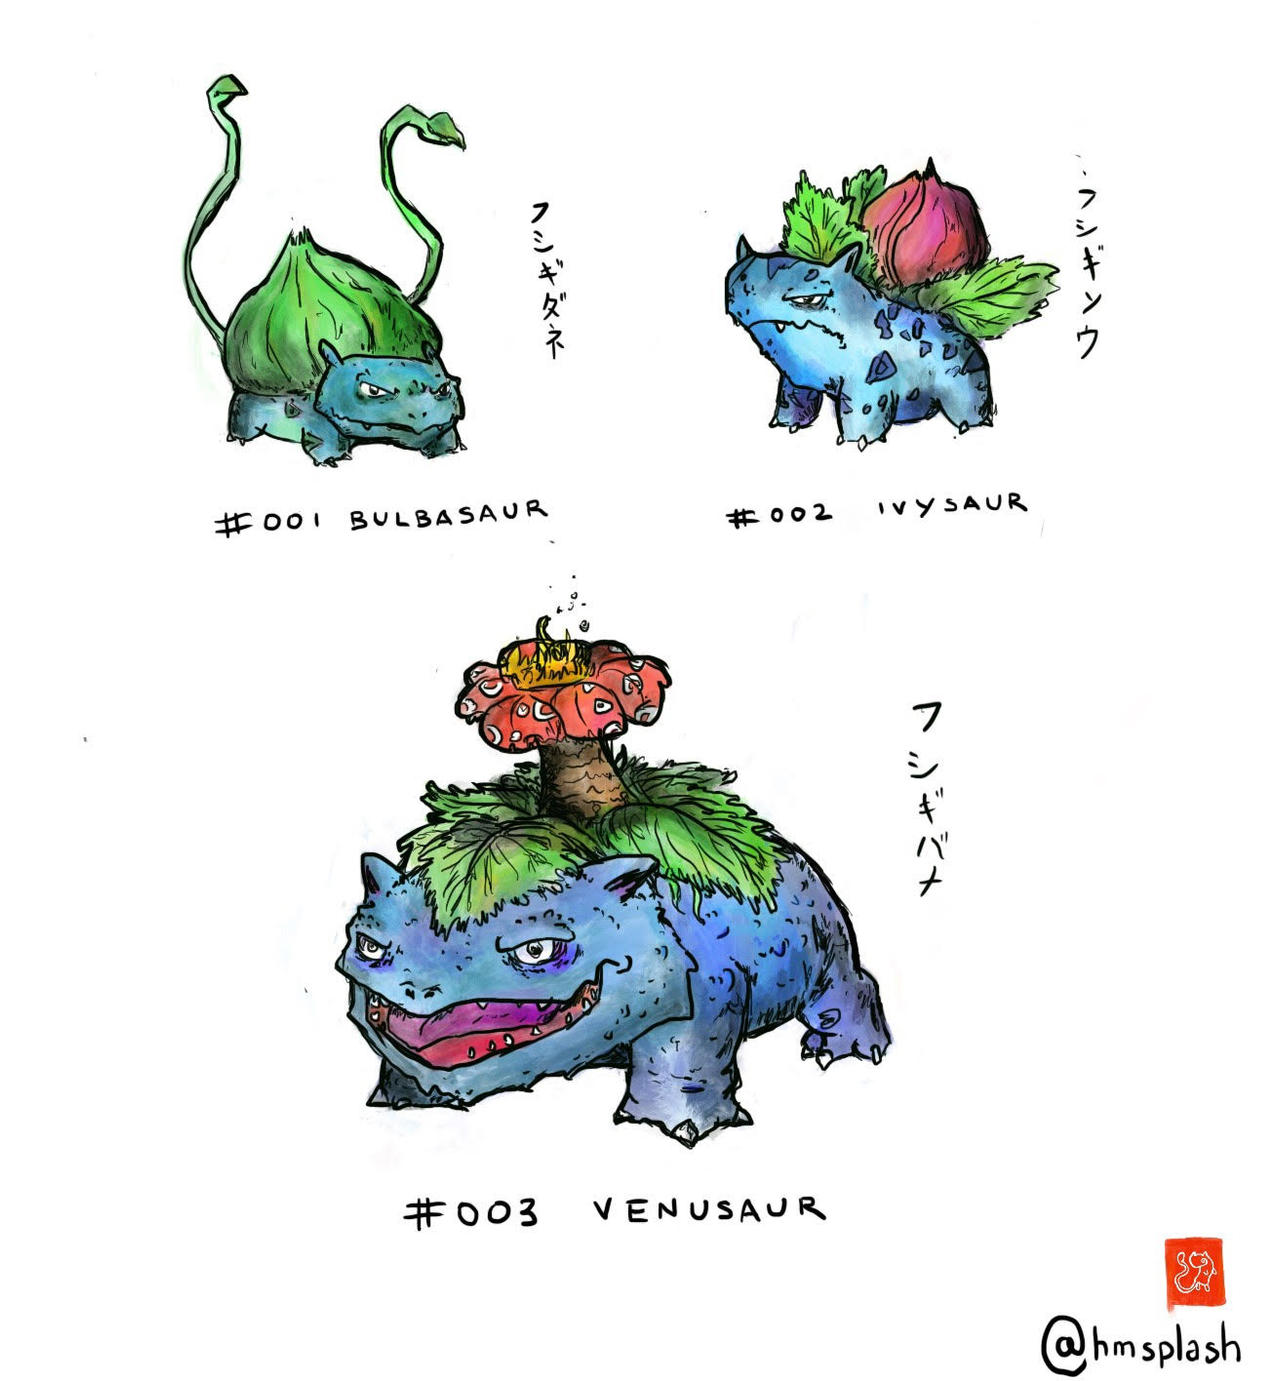 PKMN AS/OR - Bulbasaur Evolutions by LorisC93 on DeviantArt